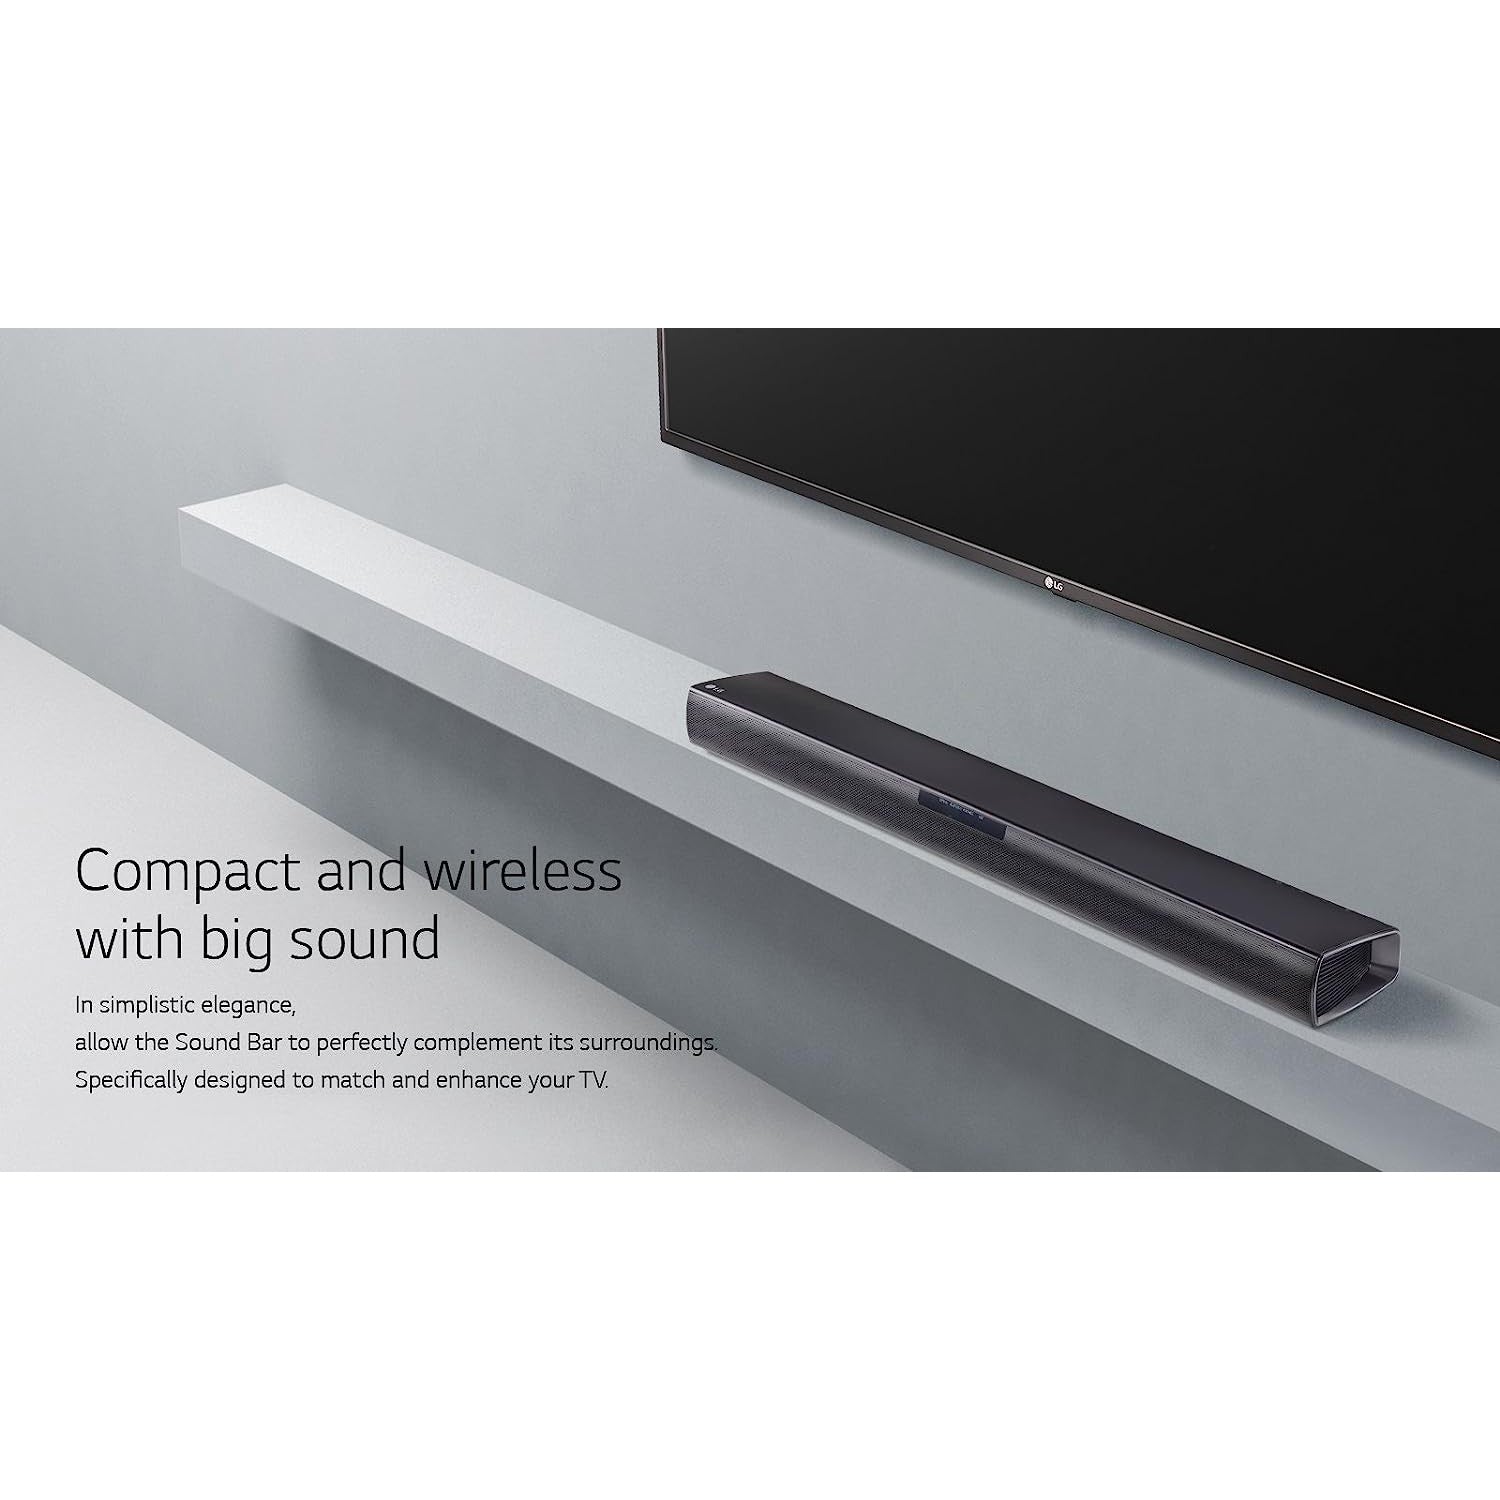 LG SJ2 Bluetooth Sound Bar with Subwoofer - Black - Refurbished Good